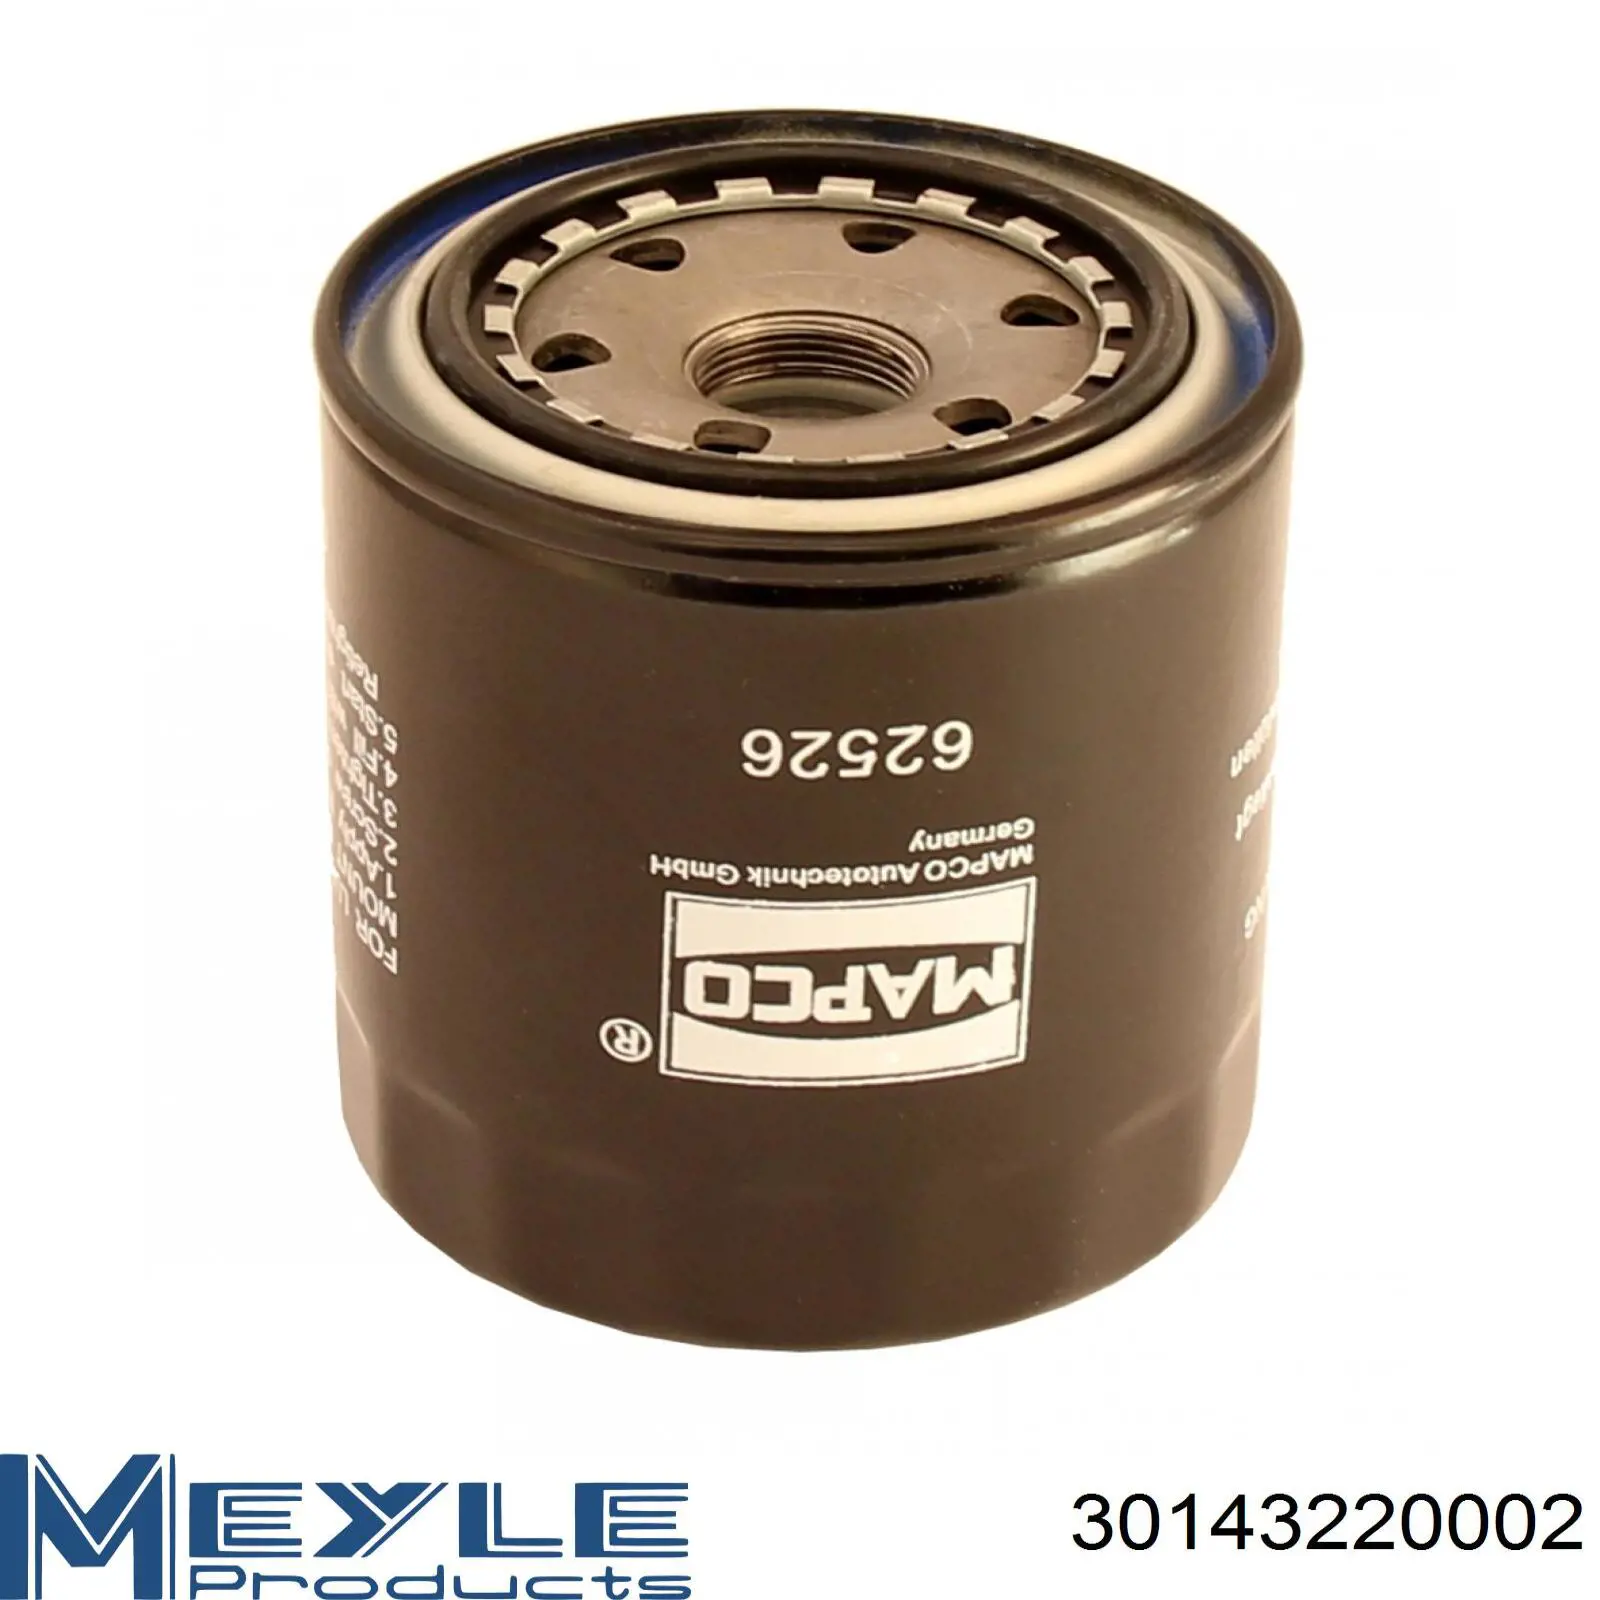 WLY214302 Mazda filtro de aceite